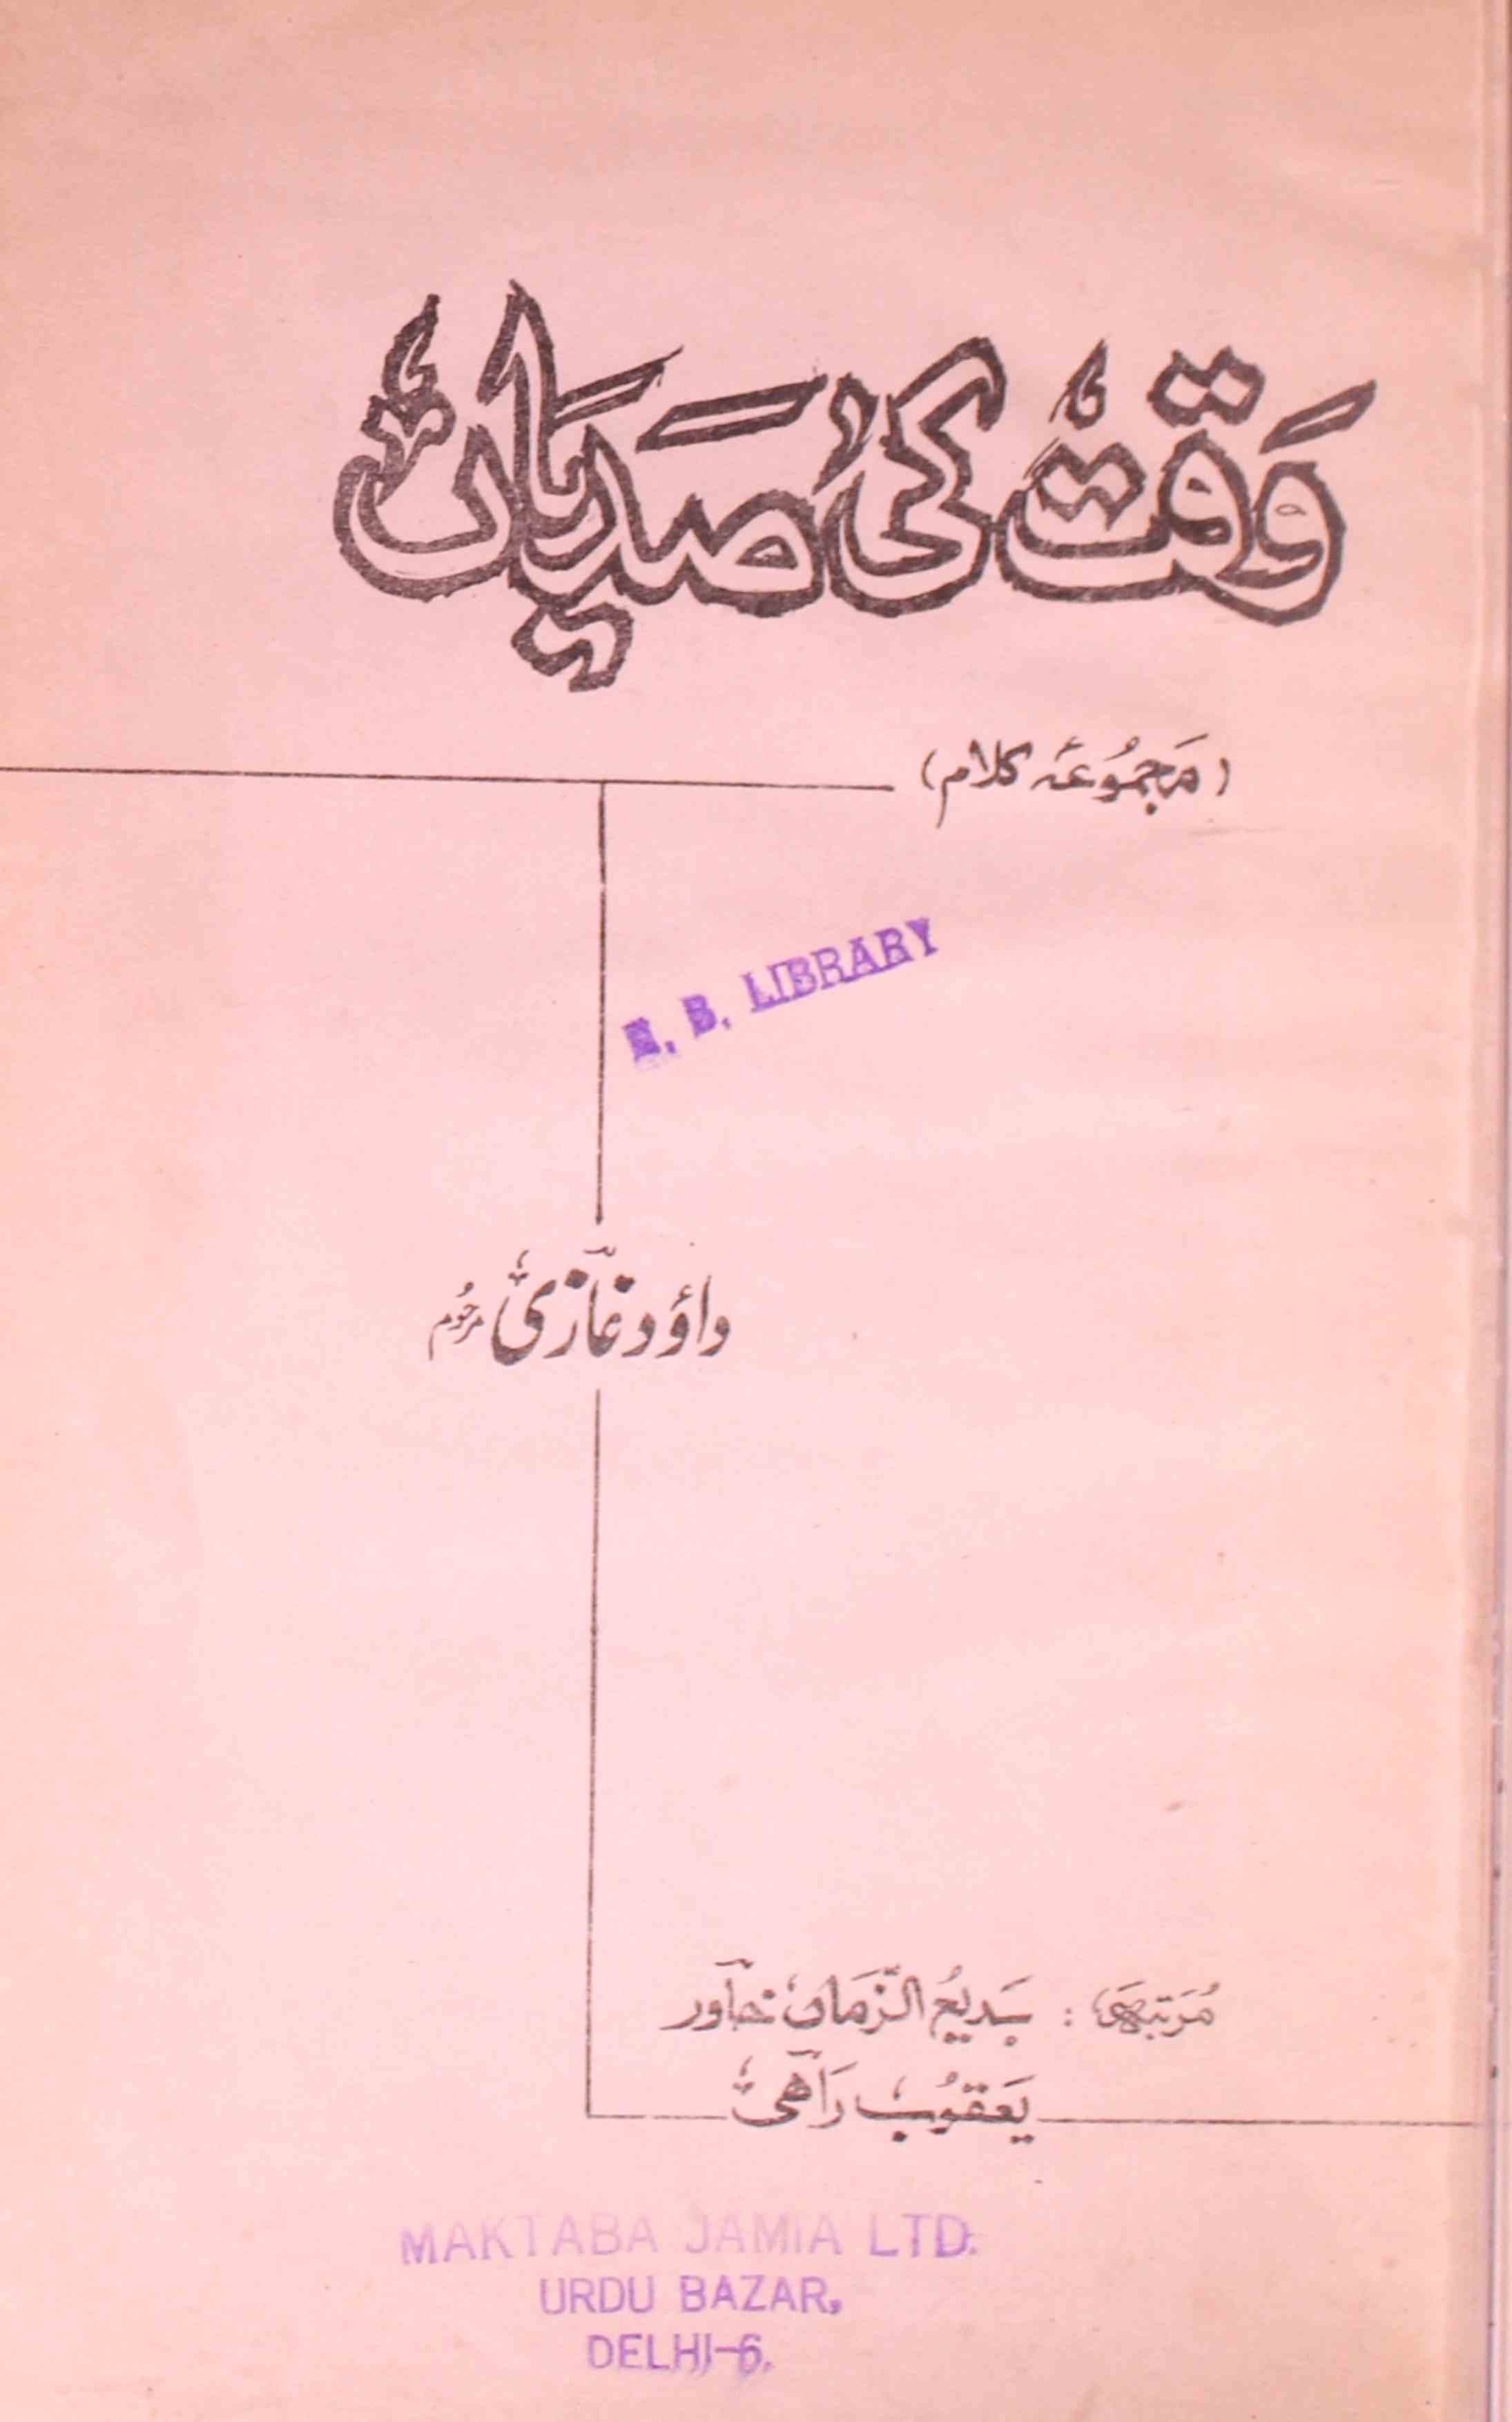 Waqt Ki Sadiyan